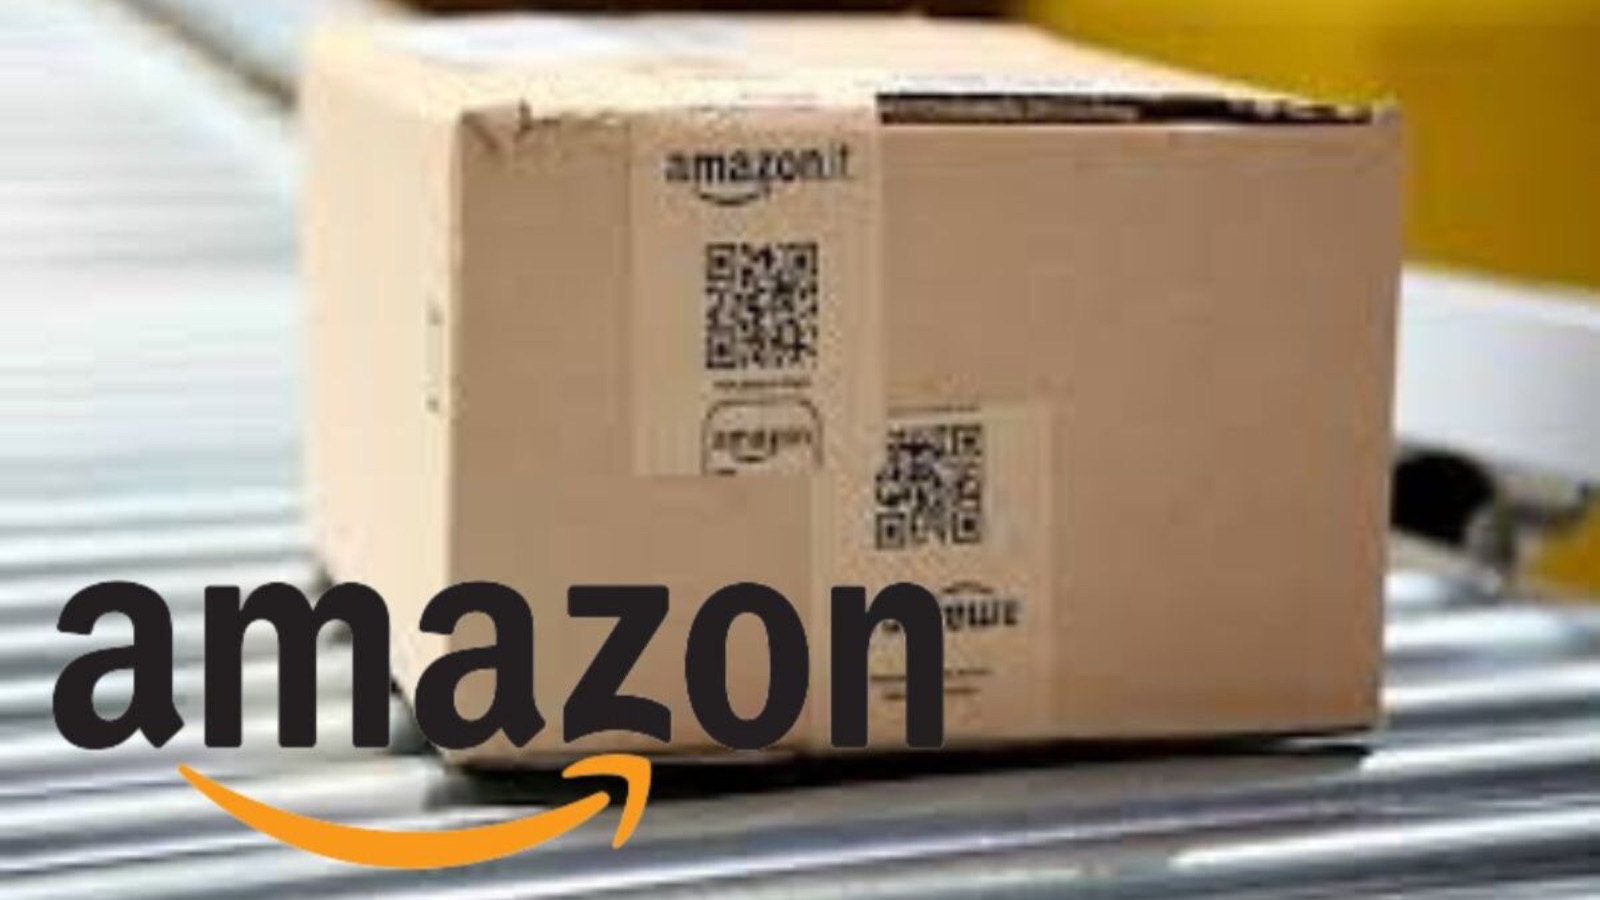 Offerte Amazon al 90% di sconto solo oggi 22 SETTEMBRE